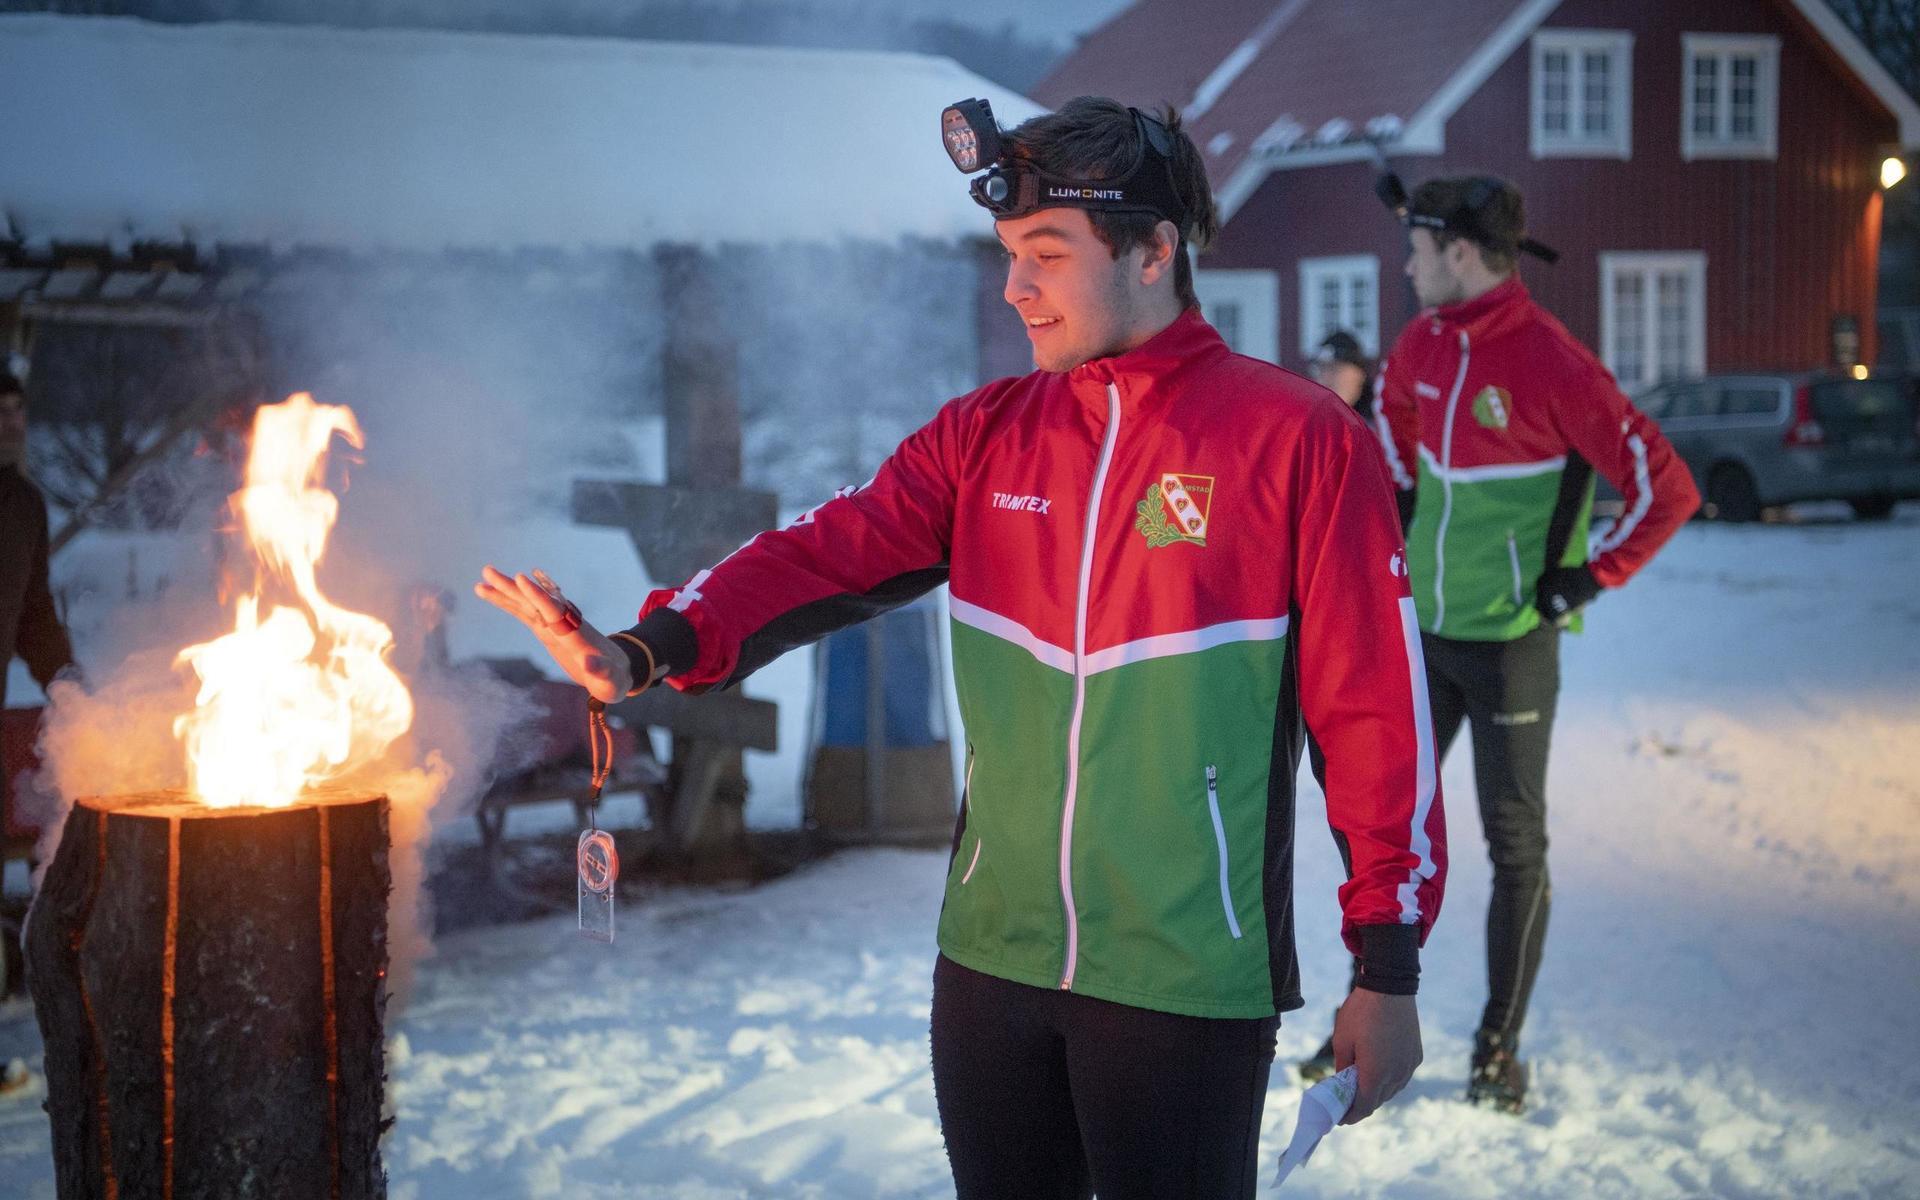 Gustav Lundqvist, 15, värmer sig vid en eldstubbe före start. Han kom till slut på elfte plats i den interna träningstävlingen. Sara Lönn vann.